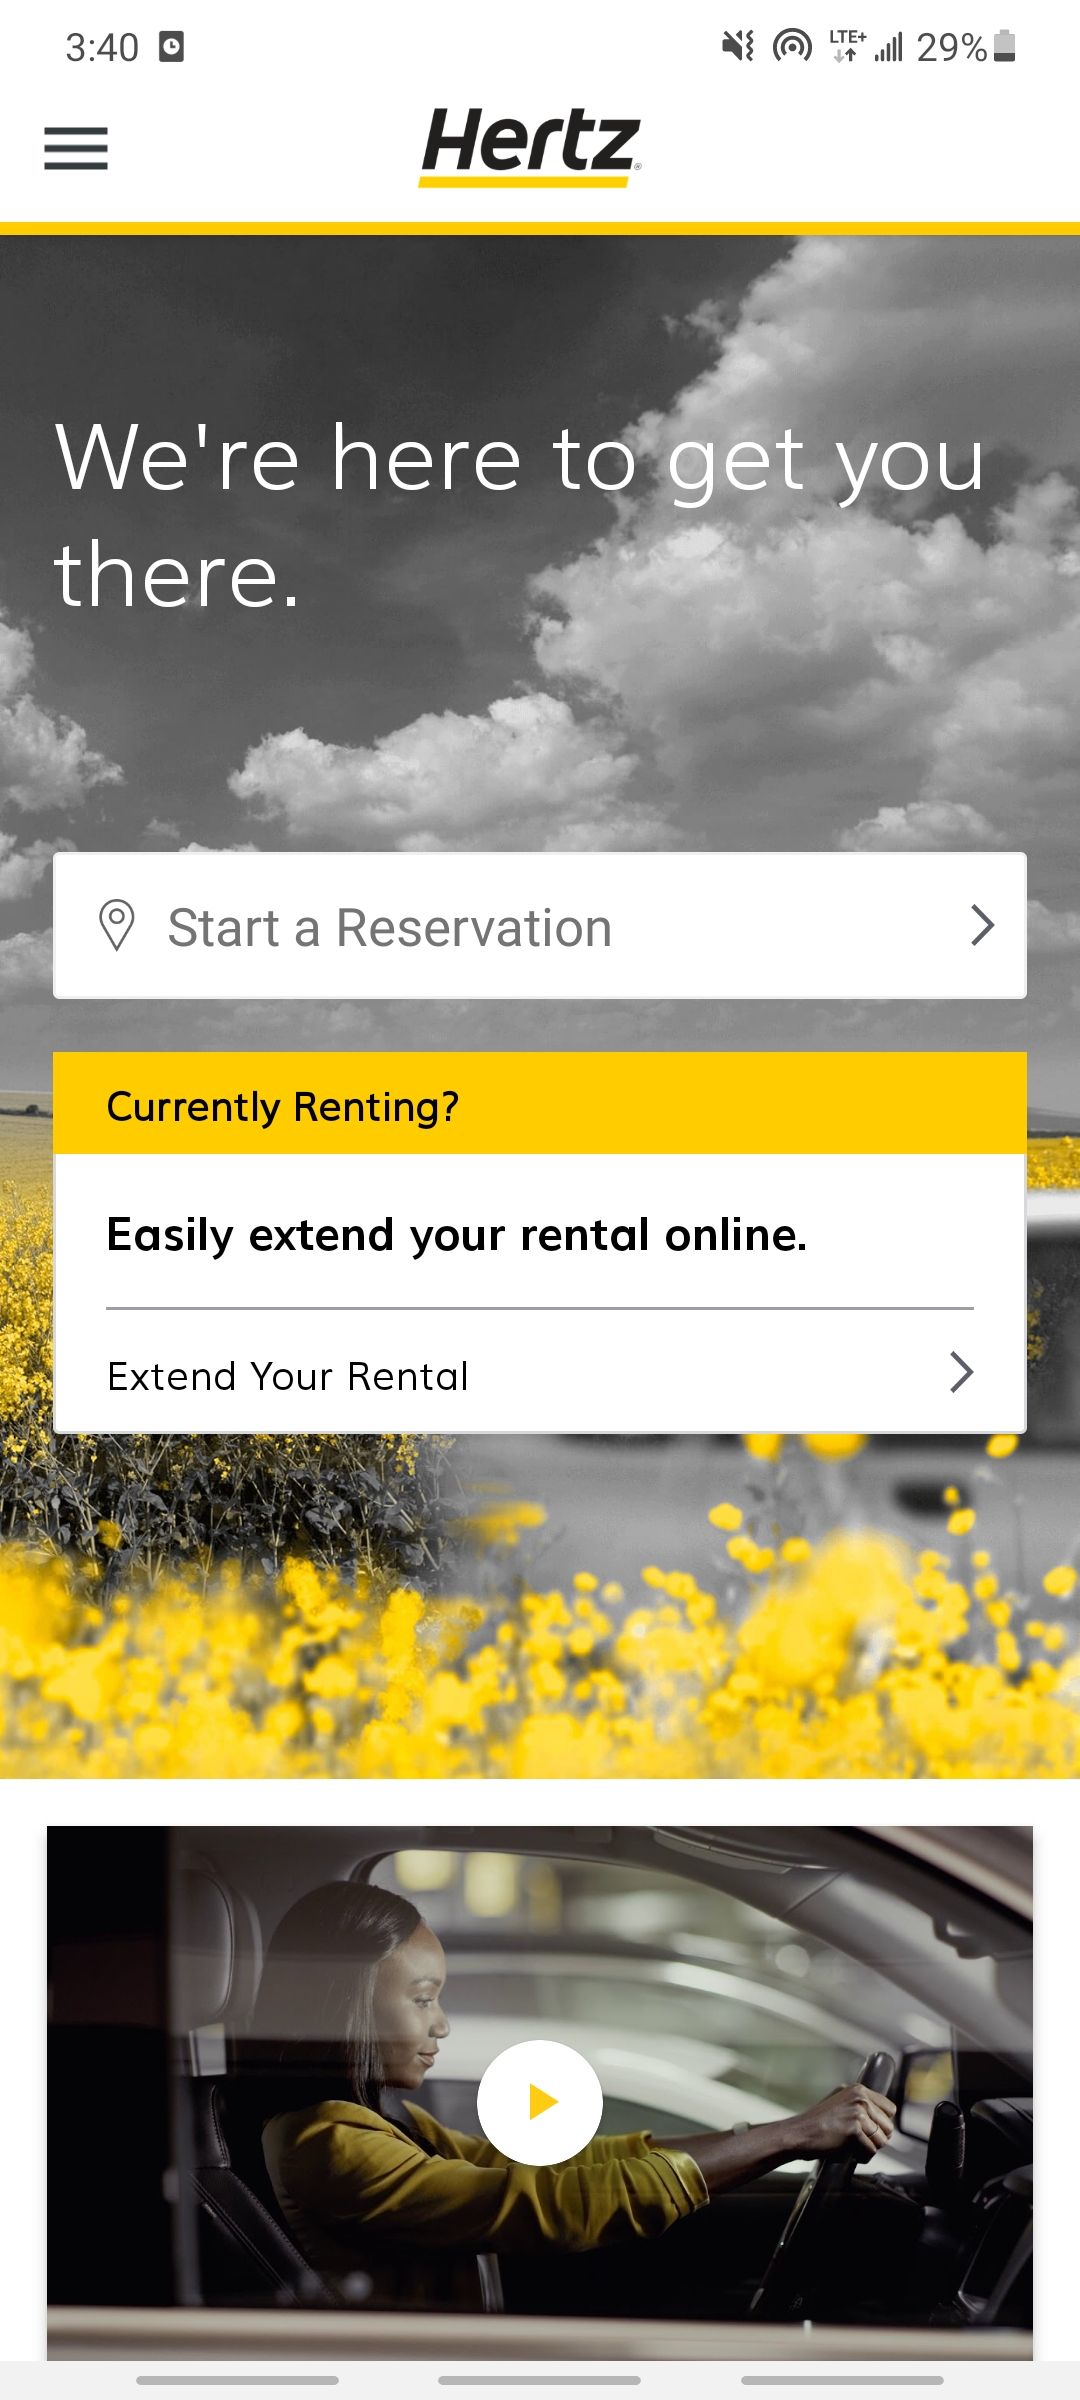 hertz car rental app home screen